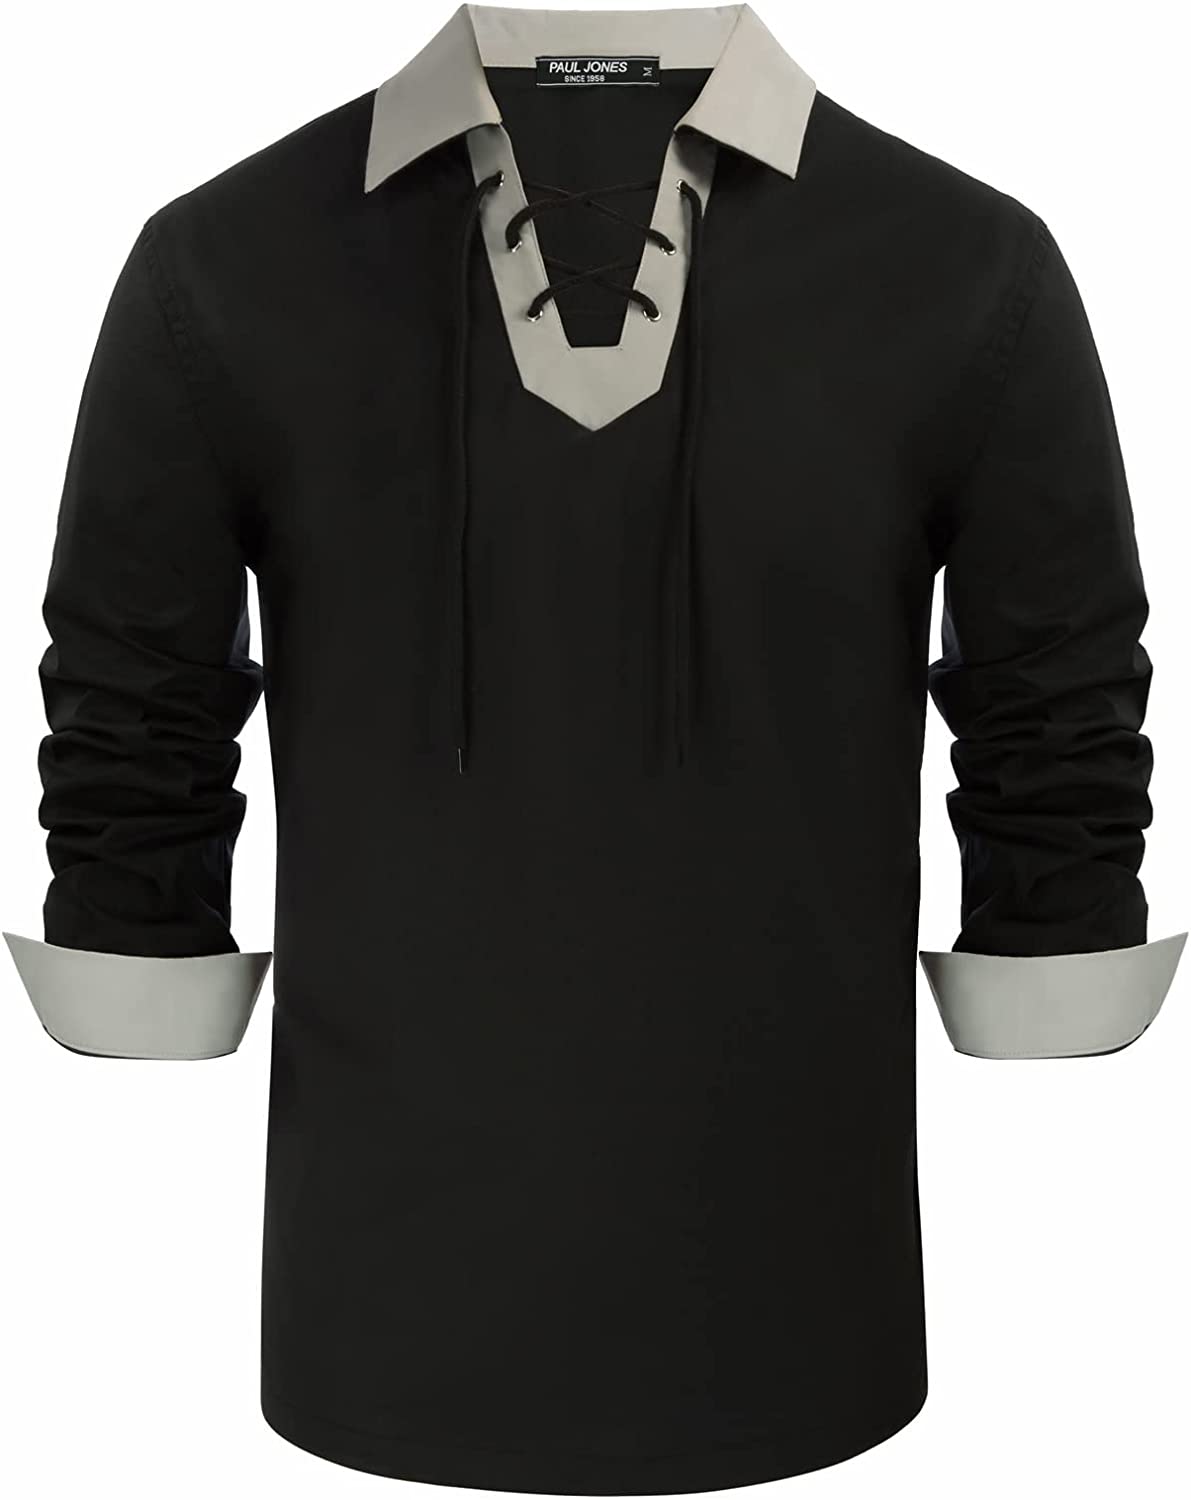 PJ PAUL JONES Men's Cotton Scottish Jacobite Ghillie Kilt Lace-Up Shirt Long Sleeve